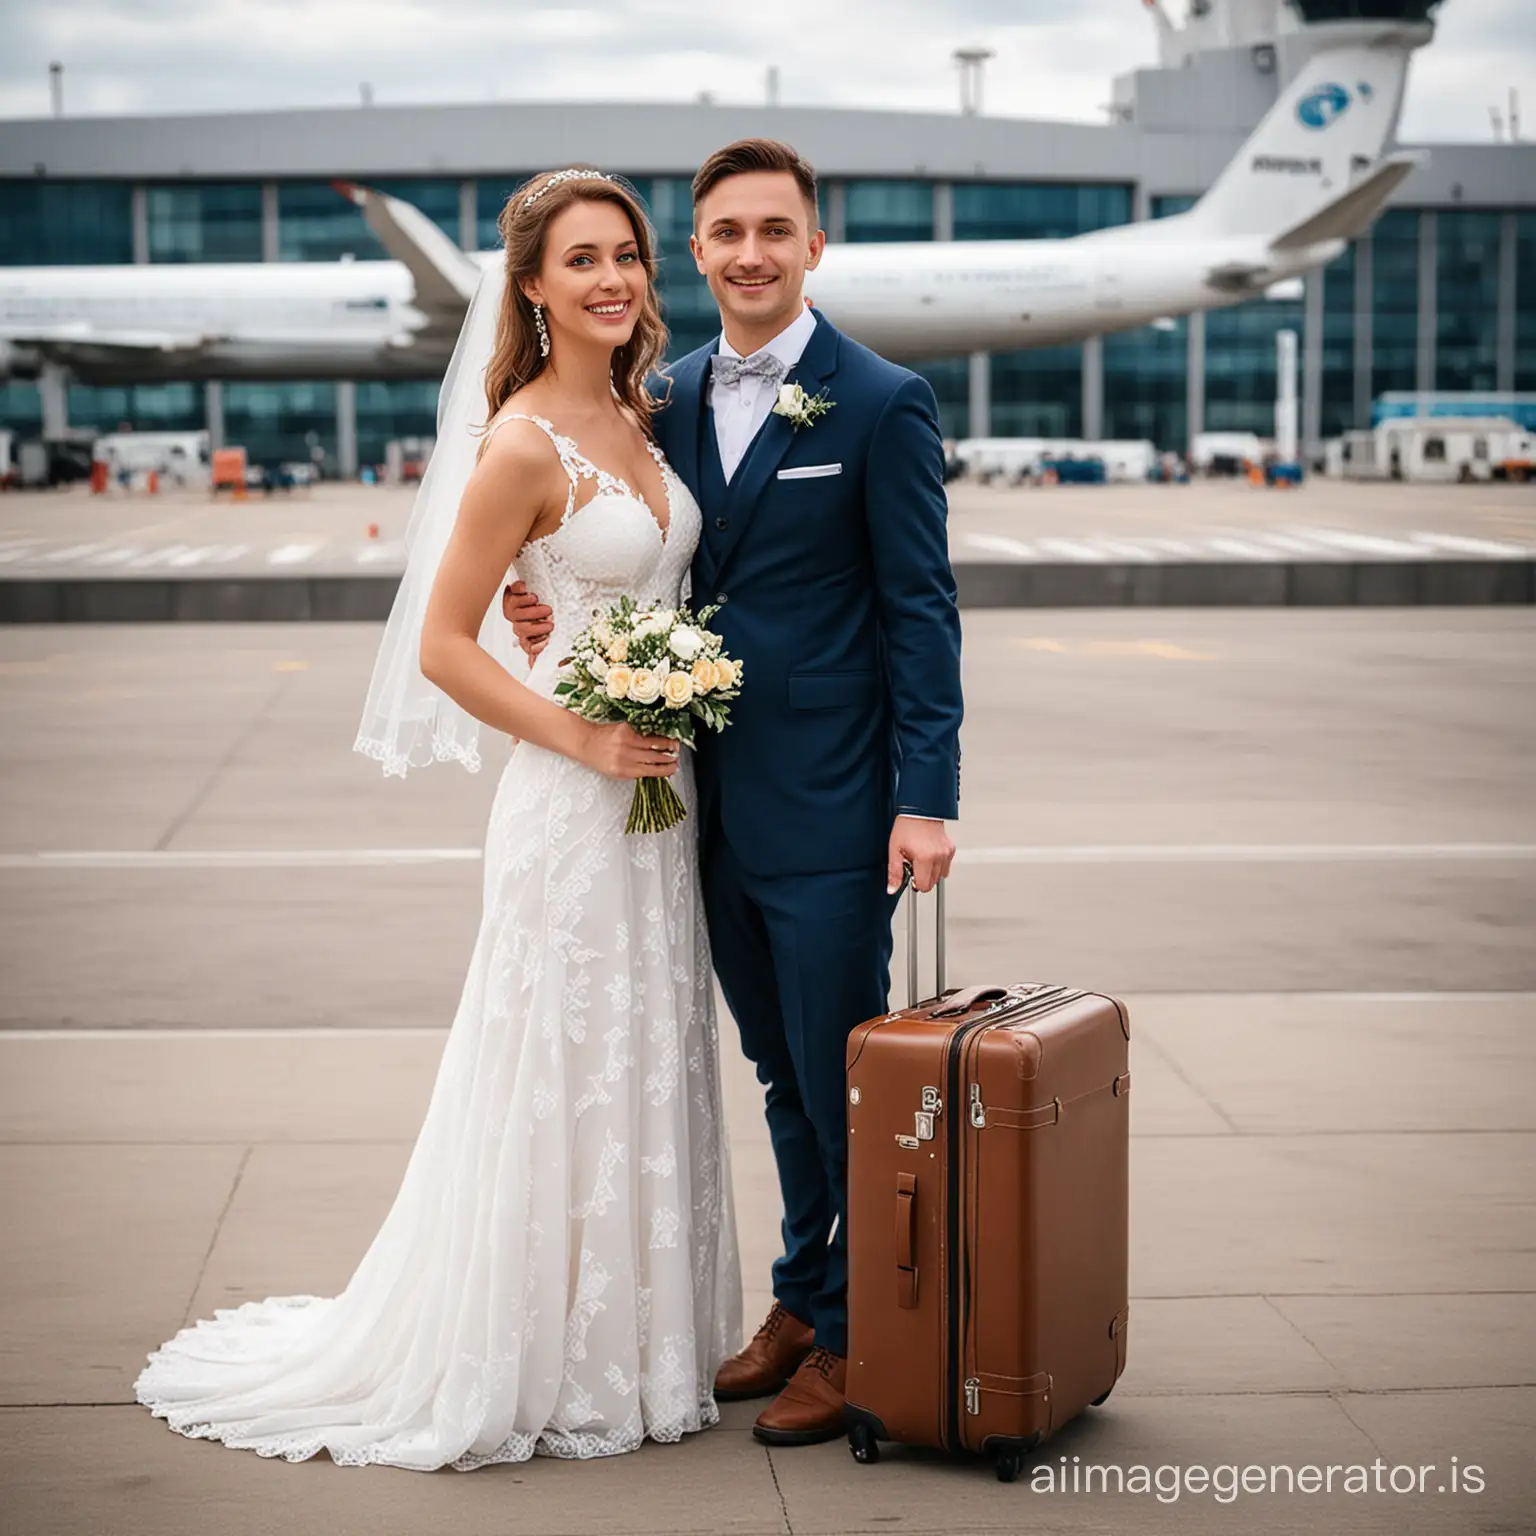 Joyful-Newlyweds-with-Suitcases-at-Nizhnevartovsk-Airport-Terminal